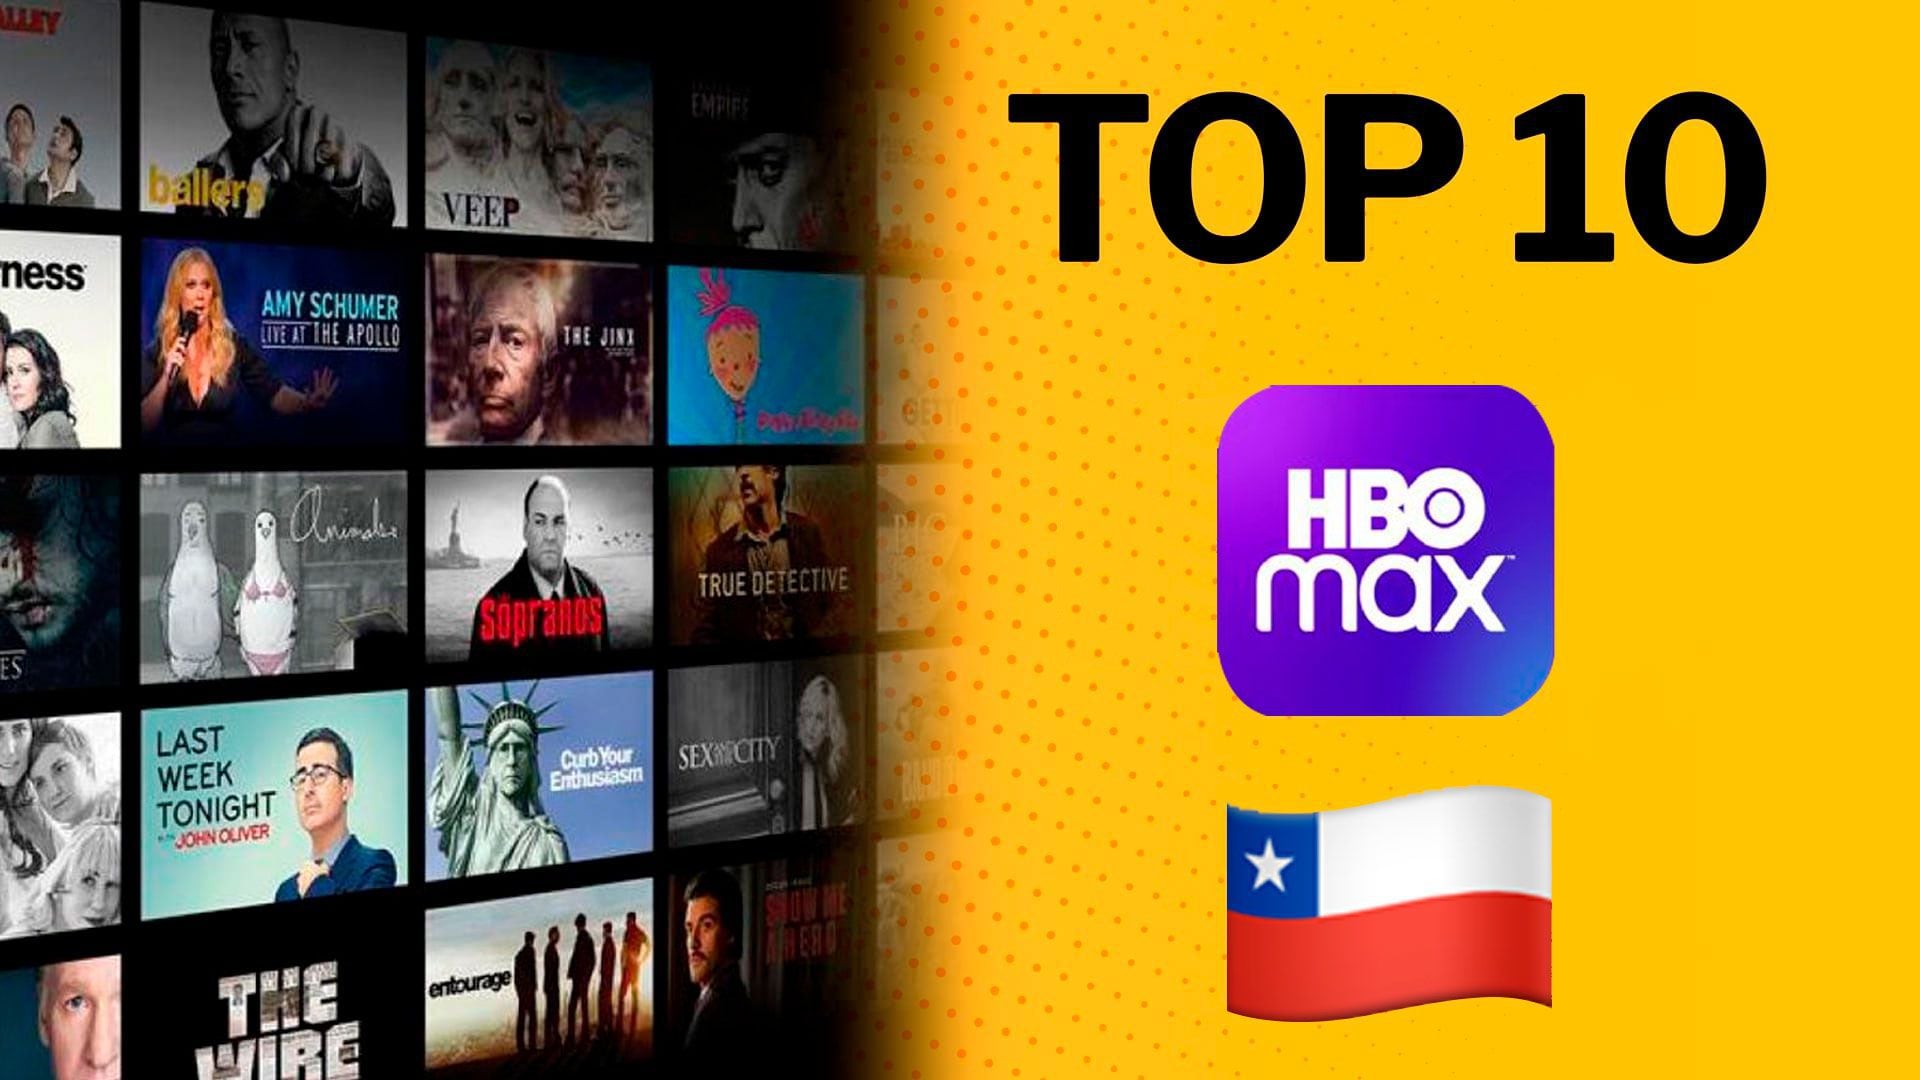 Más de una docena de servicios de streaming compiten de forma feroz para ser los reyes del mercado, entre ellos HBO Max. (Infobae)